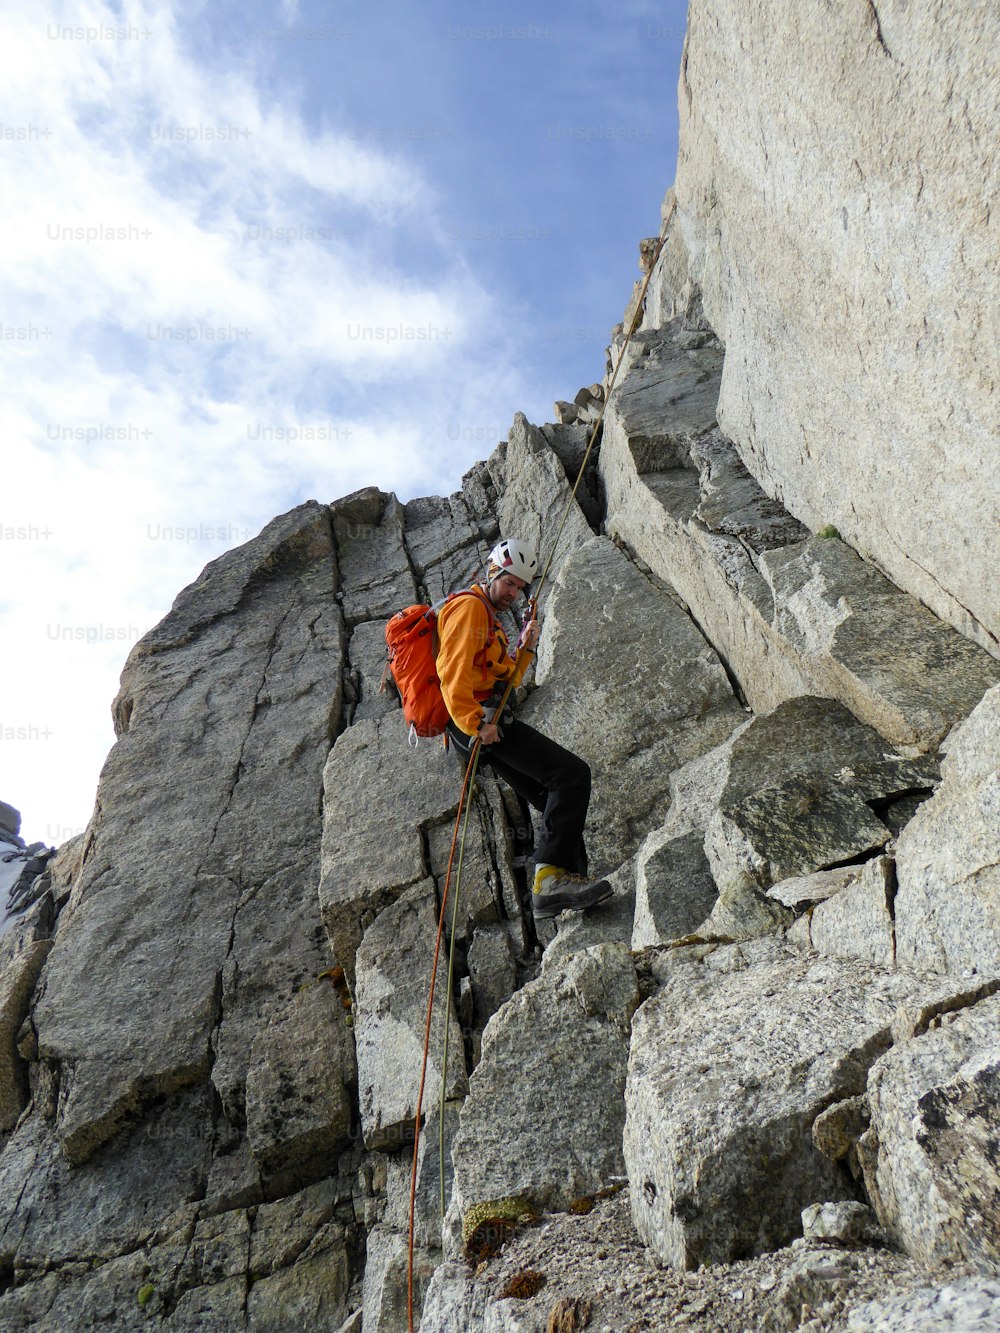 シャモニー近郊のフレンチアルプスの急峻な岩稜を懸垂下降する男性登山者